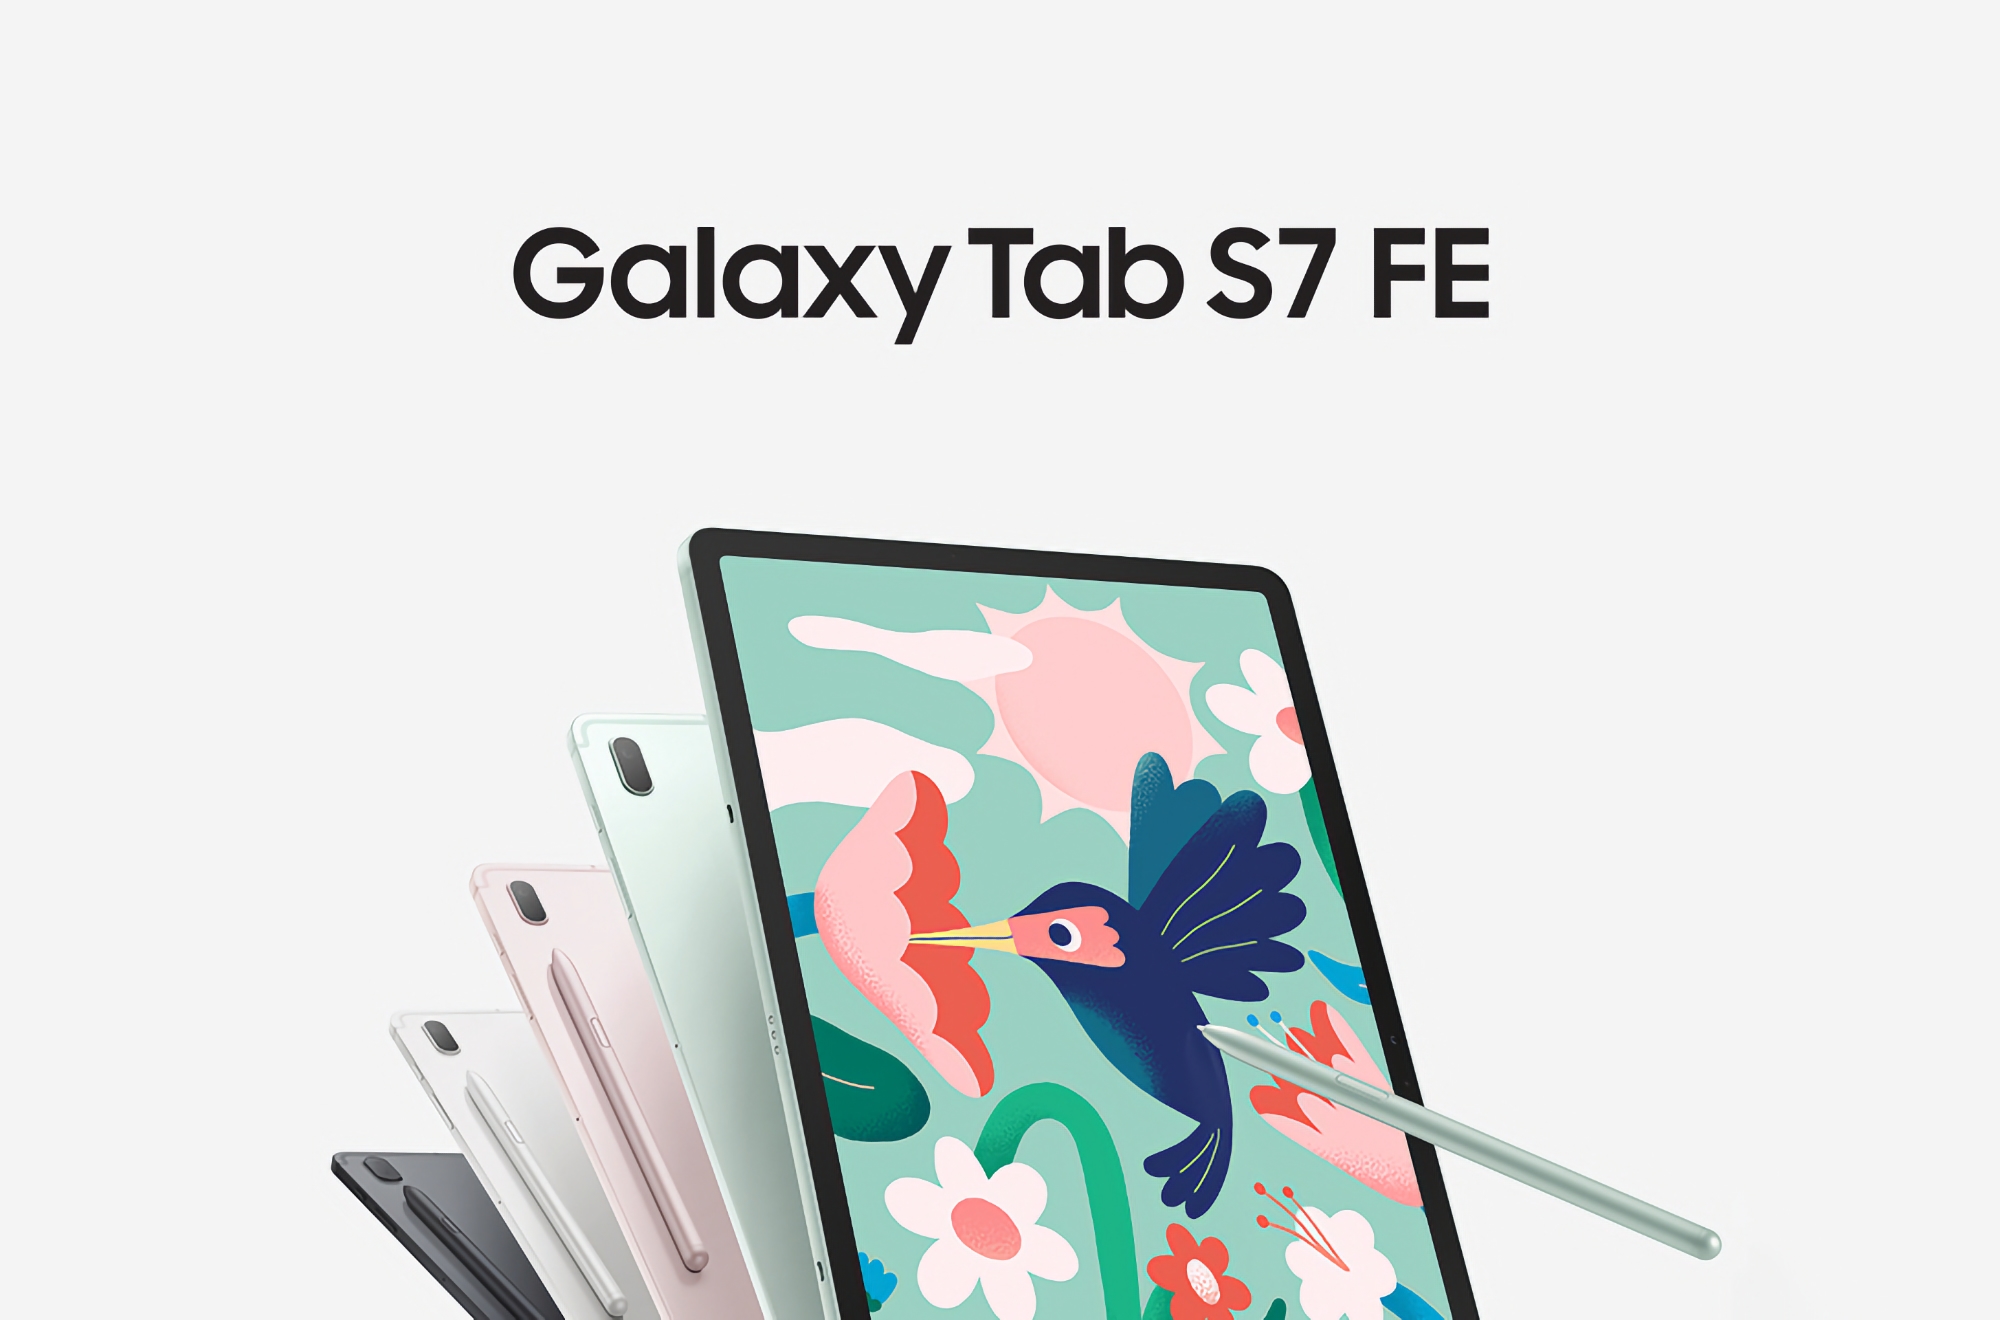 Angebot des Tages: Samsung Galaxy Tab S7 FE mit 12,4″-Bildschirm und Snapdragon 750G-Chip bei Amazon für $220 Rabatt